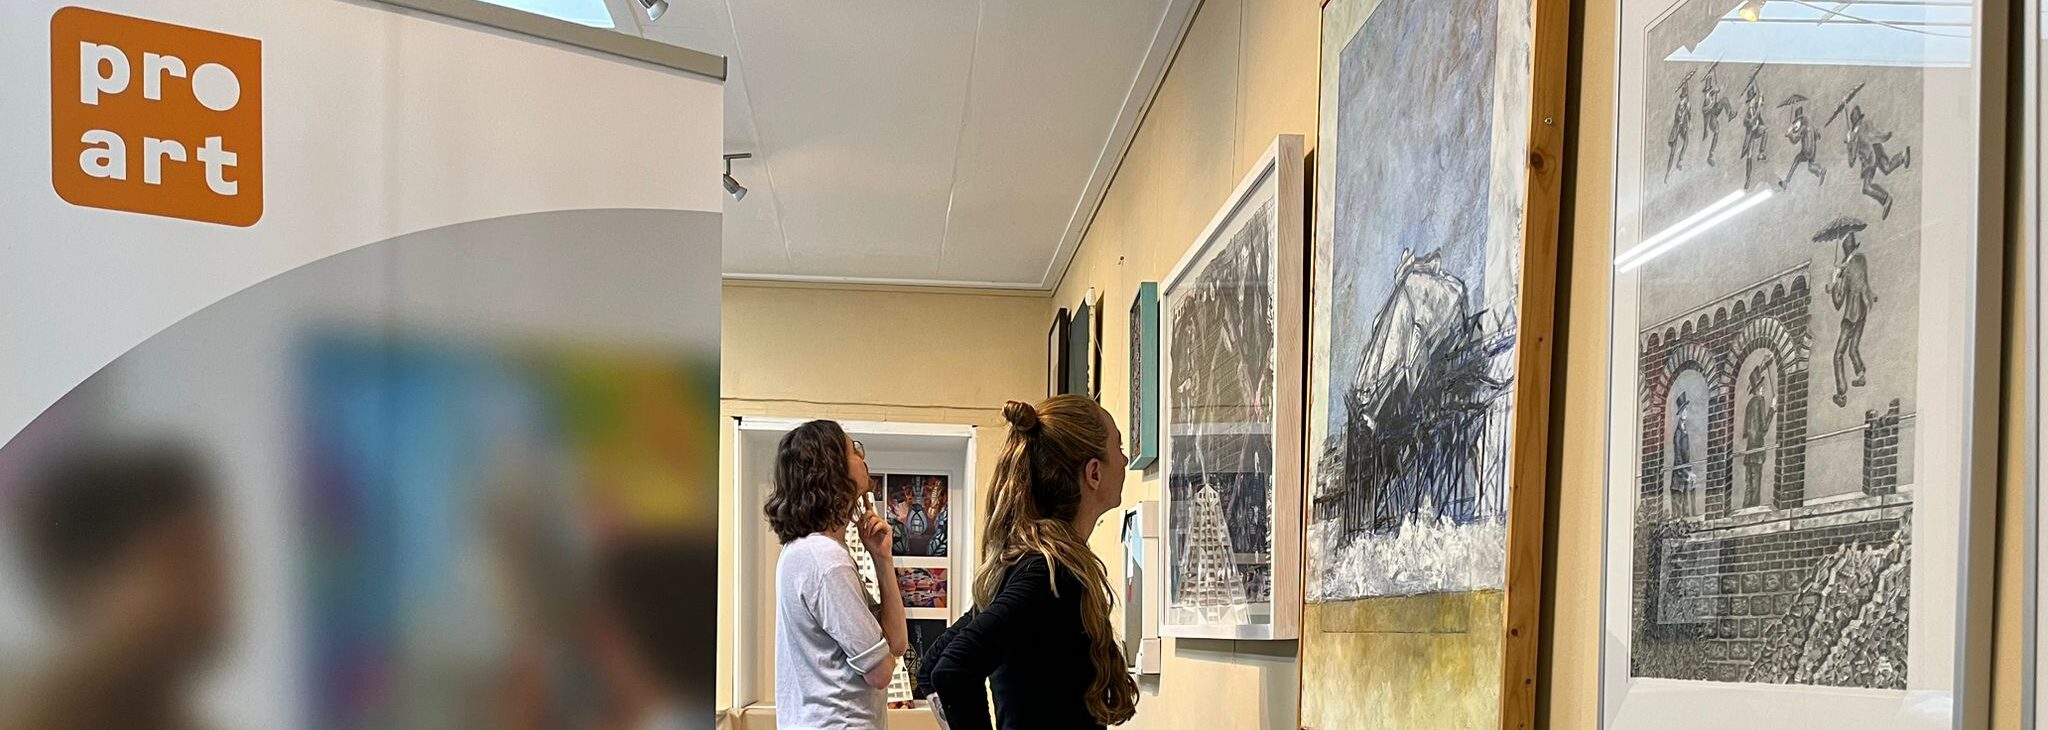 Bezoekers bewonderen kunstwerken tijdens Pro Art Laat zien expositie - Lokale kunst galerij in Nijmegen